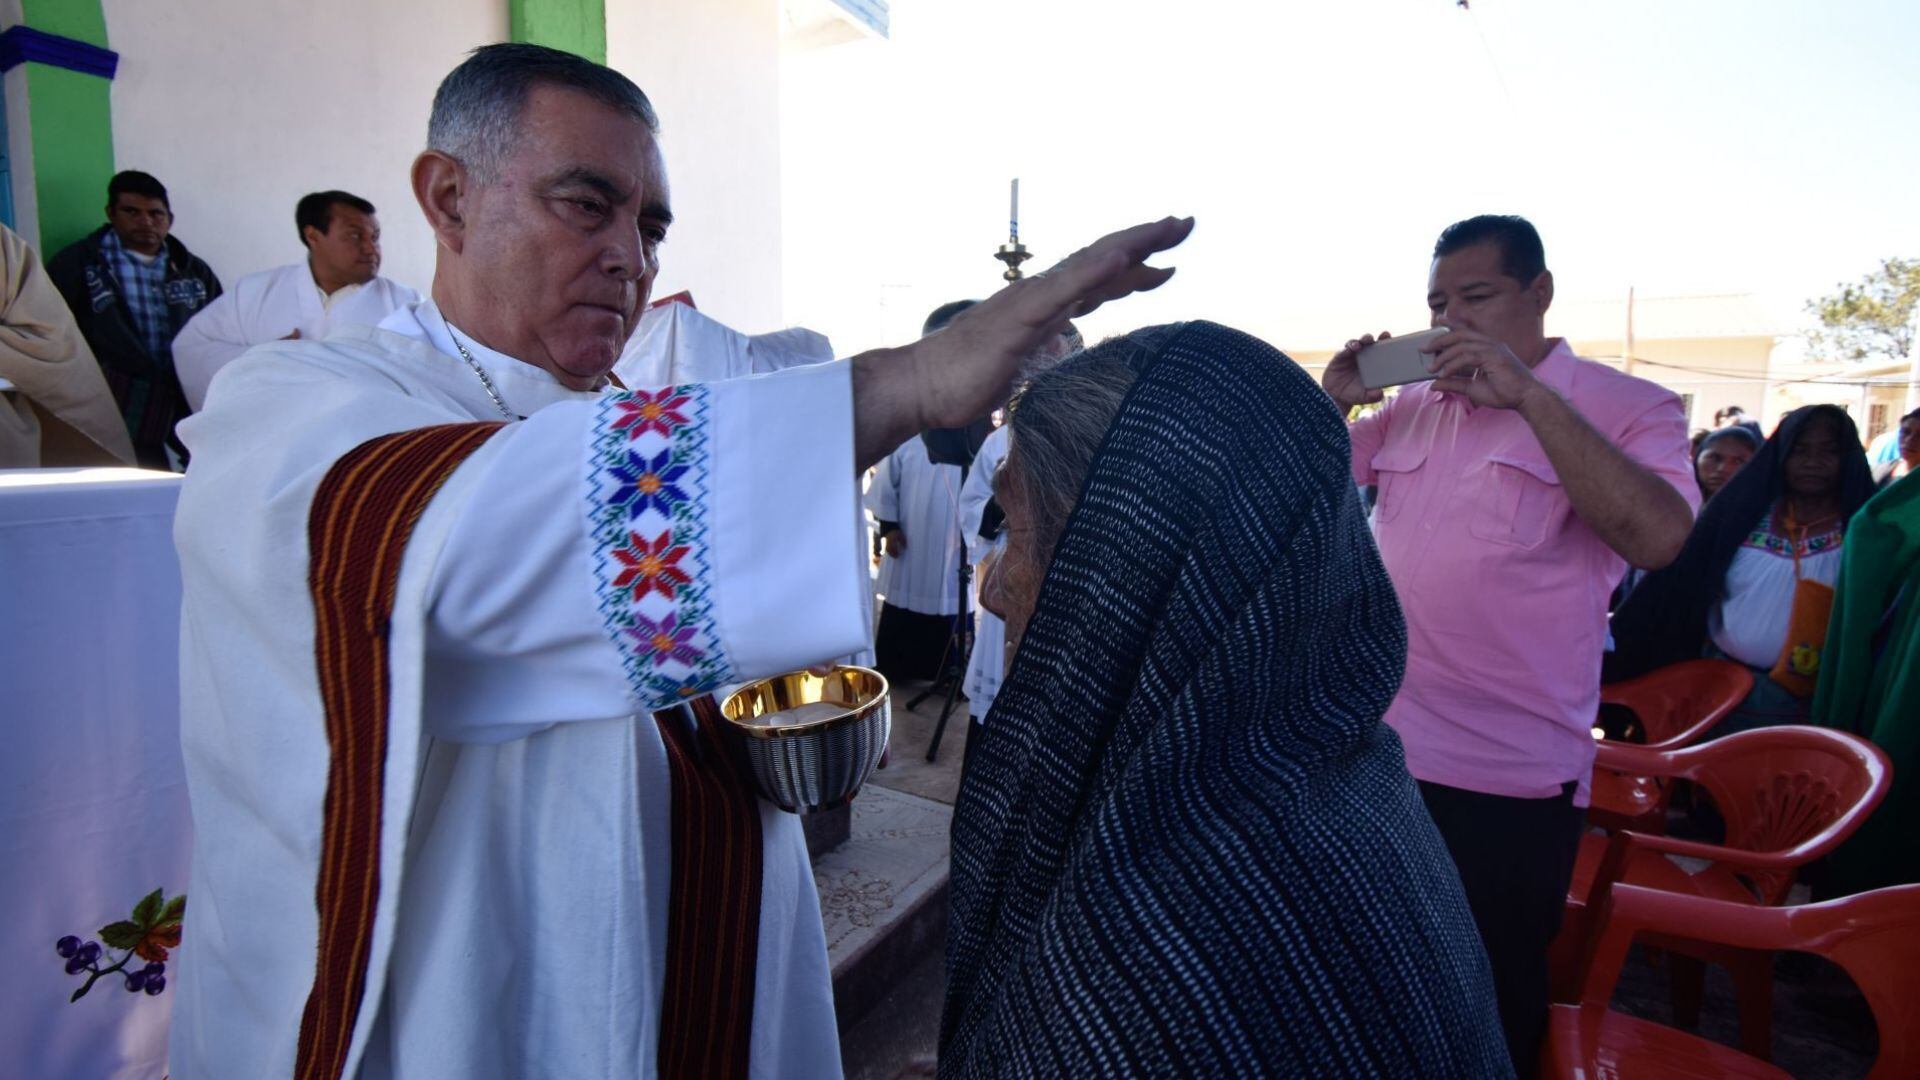 El obispo Salvador Rangel fue torturado e iban a desaparecerlo, denuncia uno de sus colegas